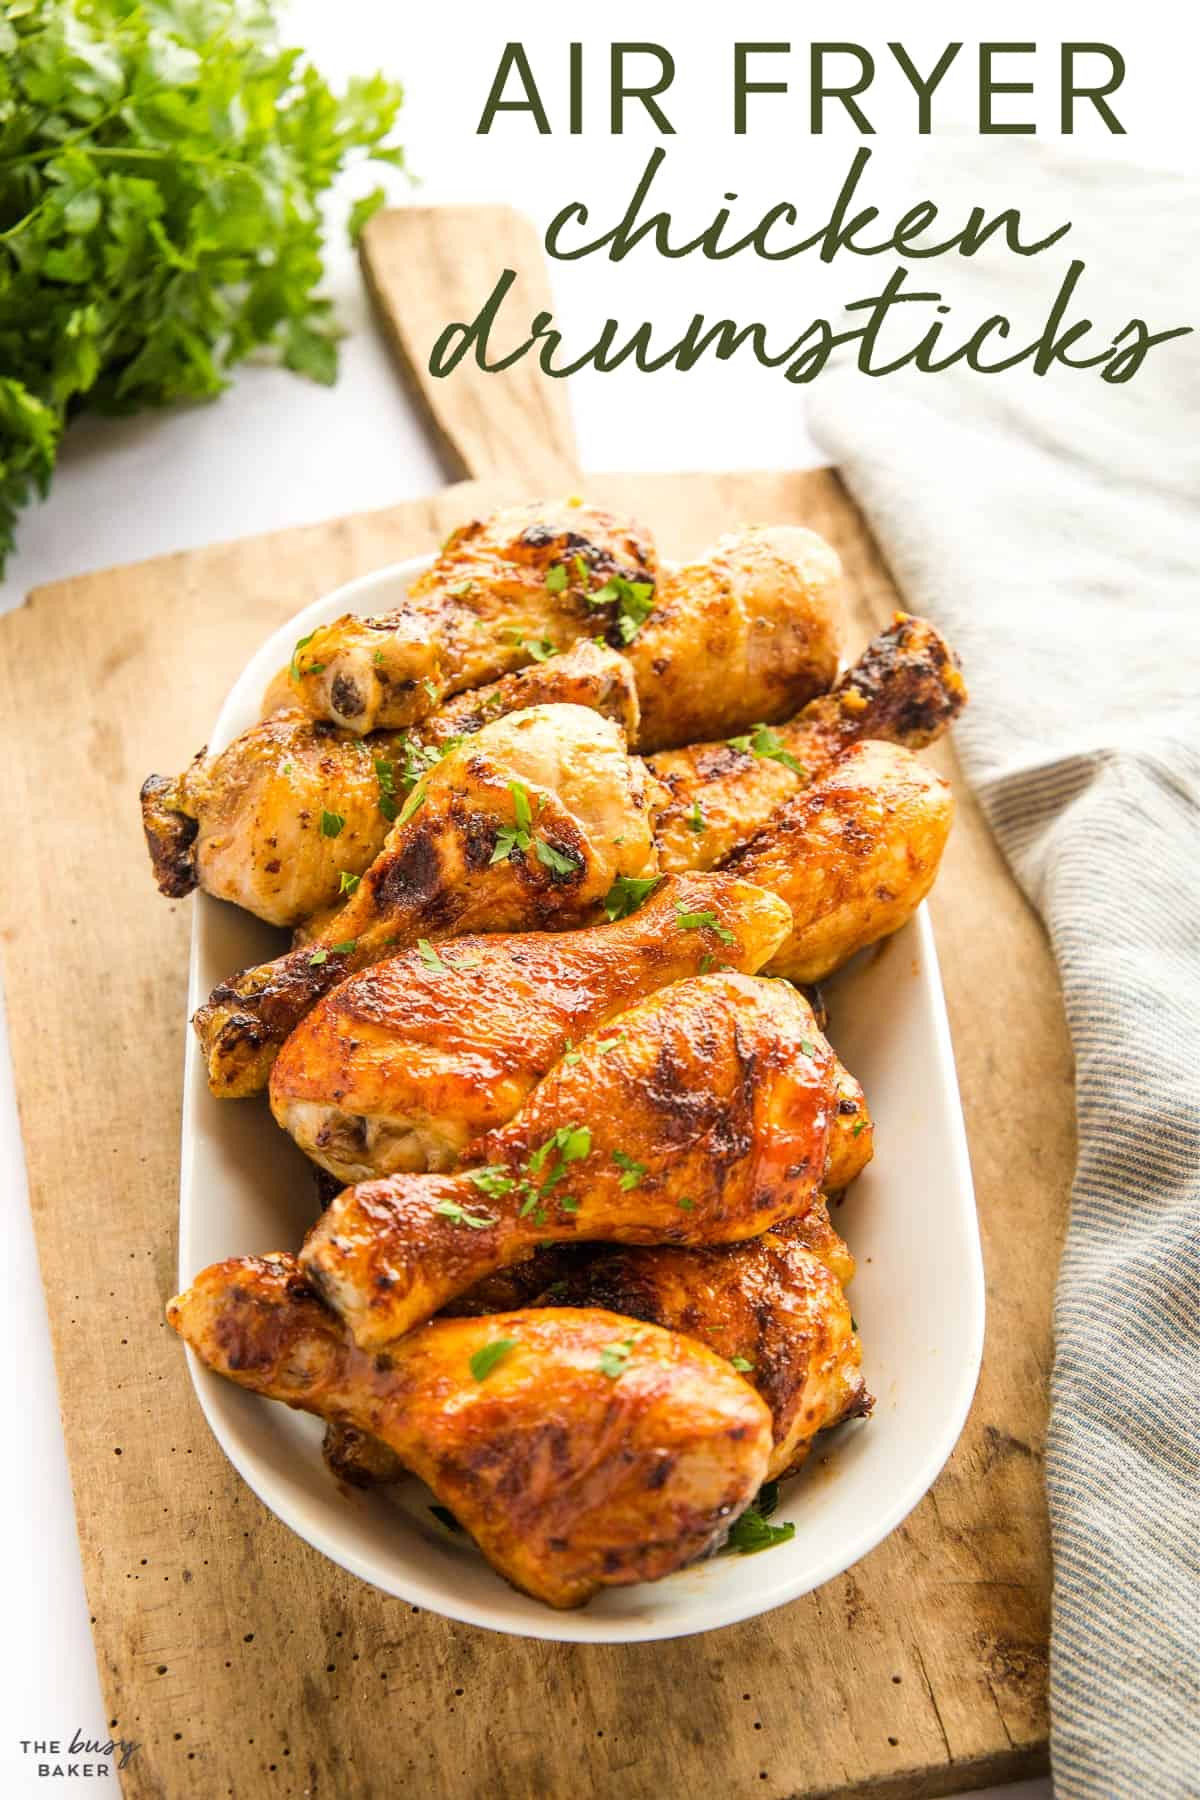 air fryer chicken drumsticks recipe